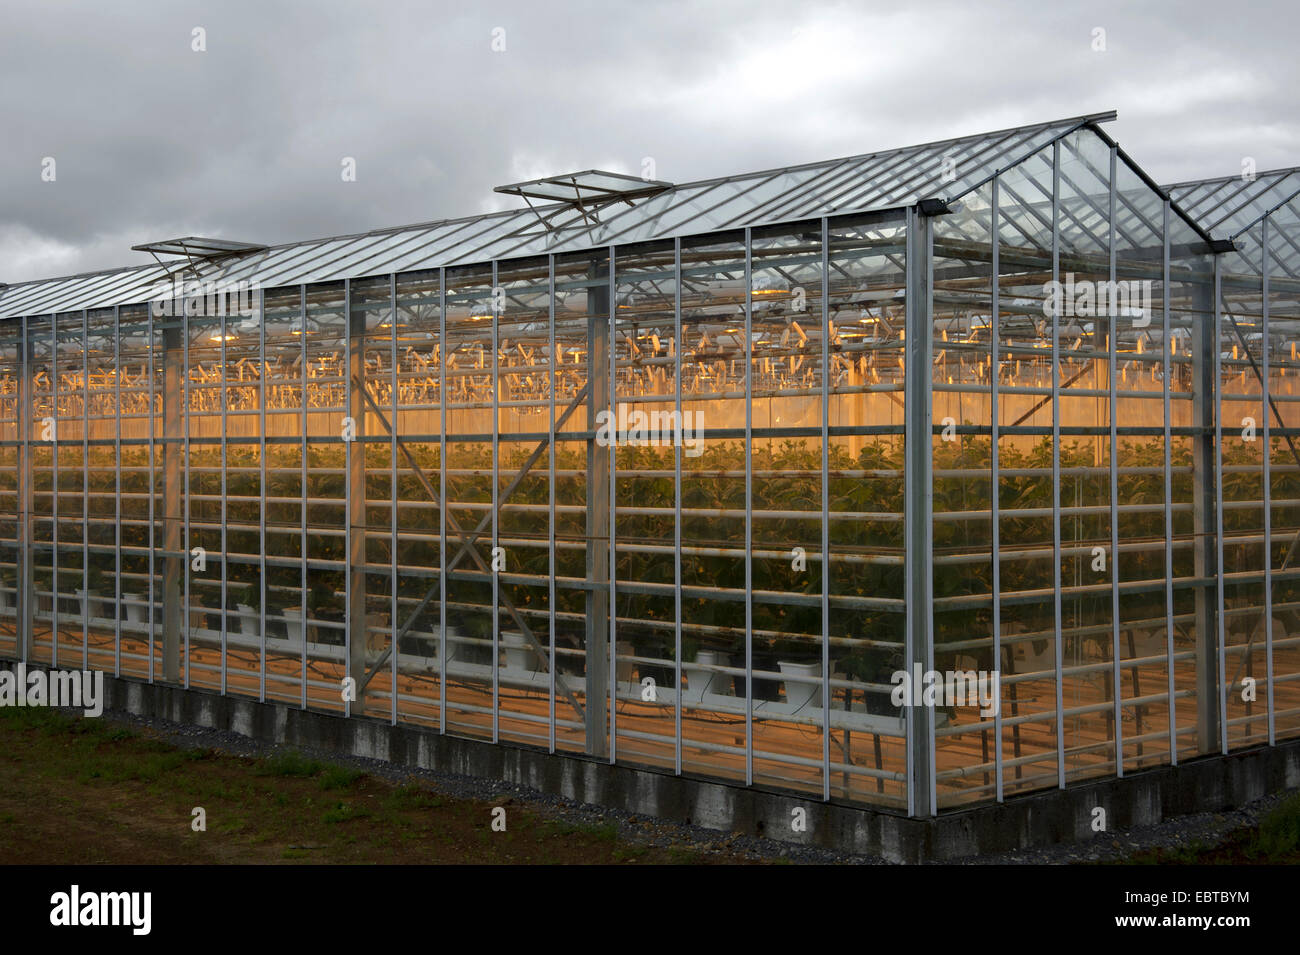 large illuminated greenhouse, Iceland Stock Photo